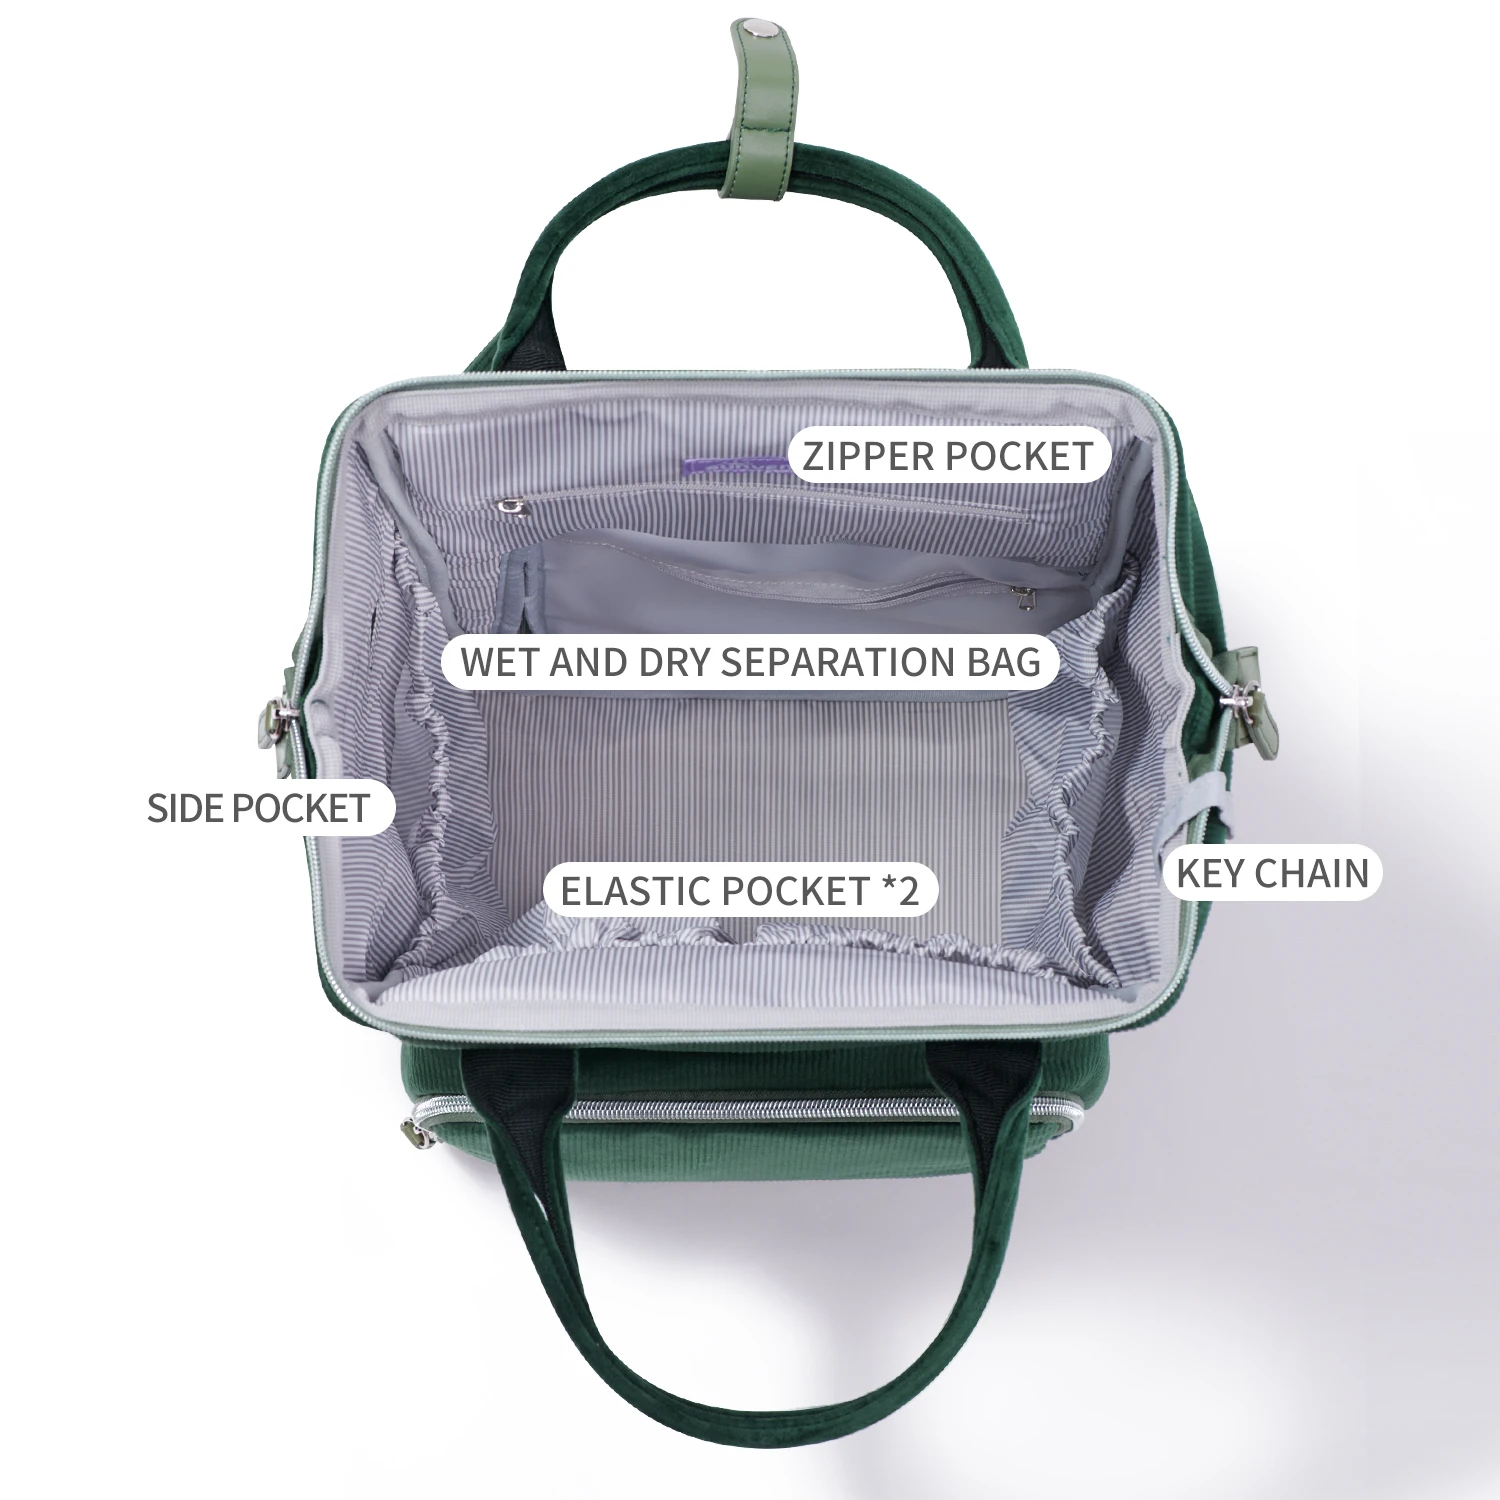 Sunveno – sac à couches Original, sac de voyage pour bébé, sac à dos pour maman et enfant